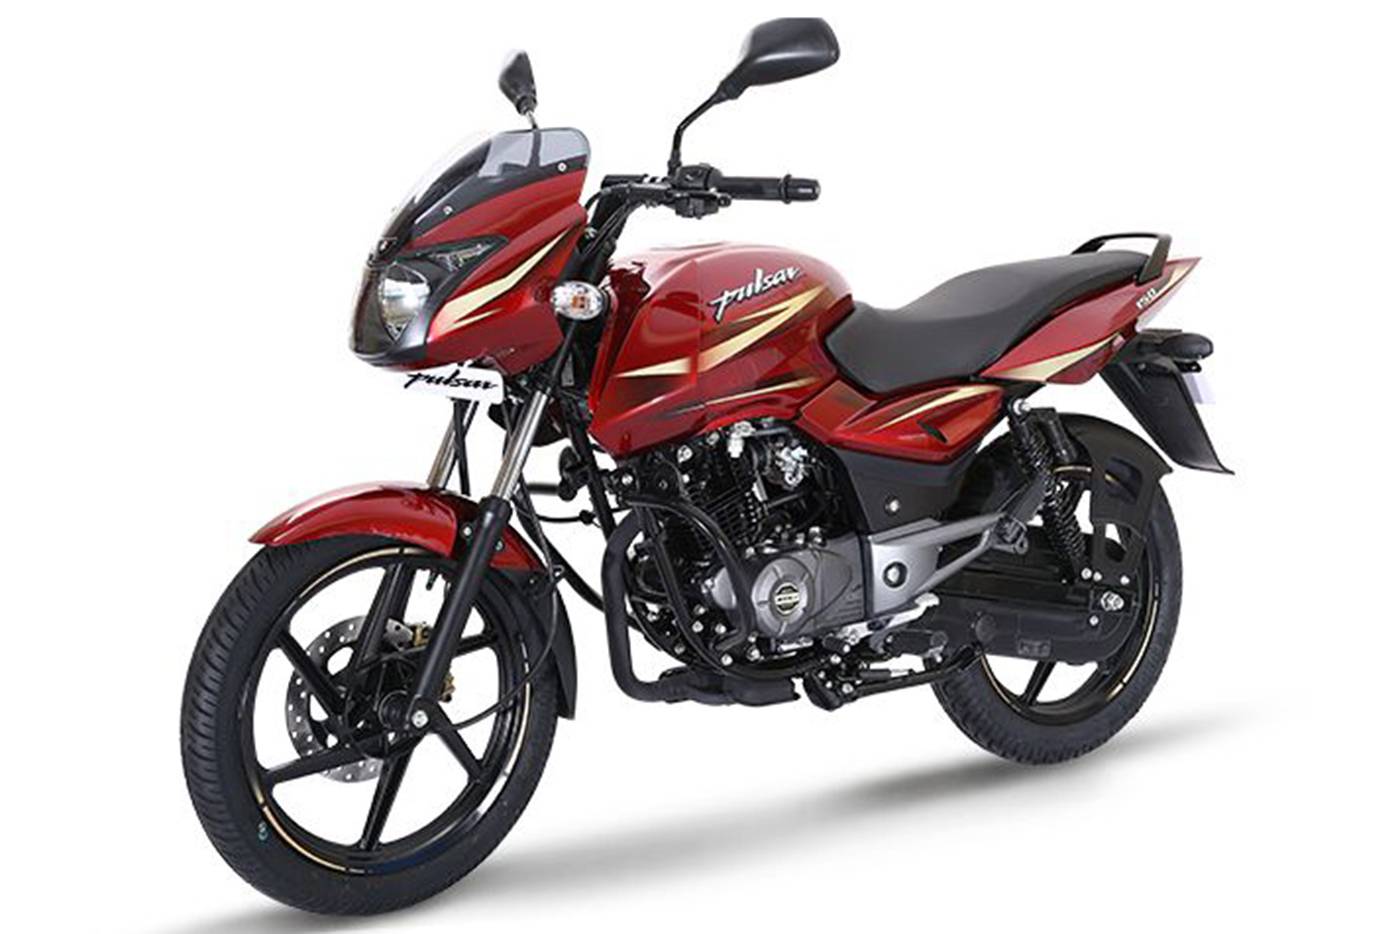 Мотоцикл bajaj boxer bm 125 x new (5 ступенчатая коробка передач) 2020 г.в.